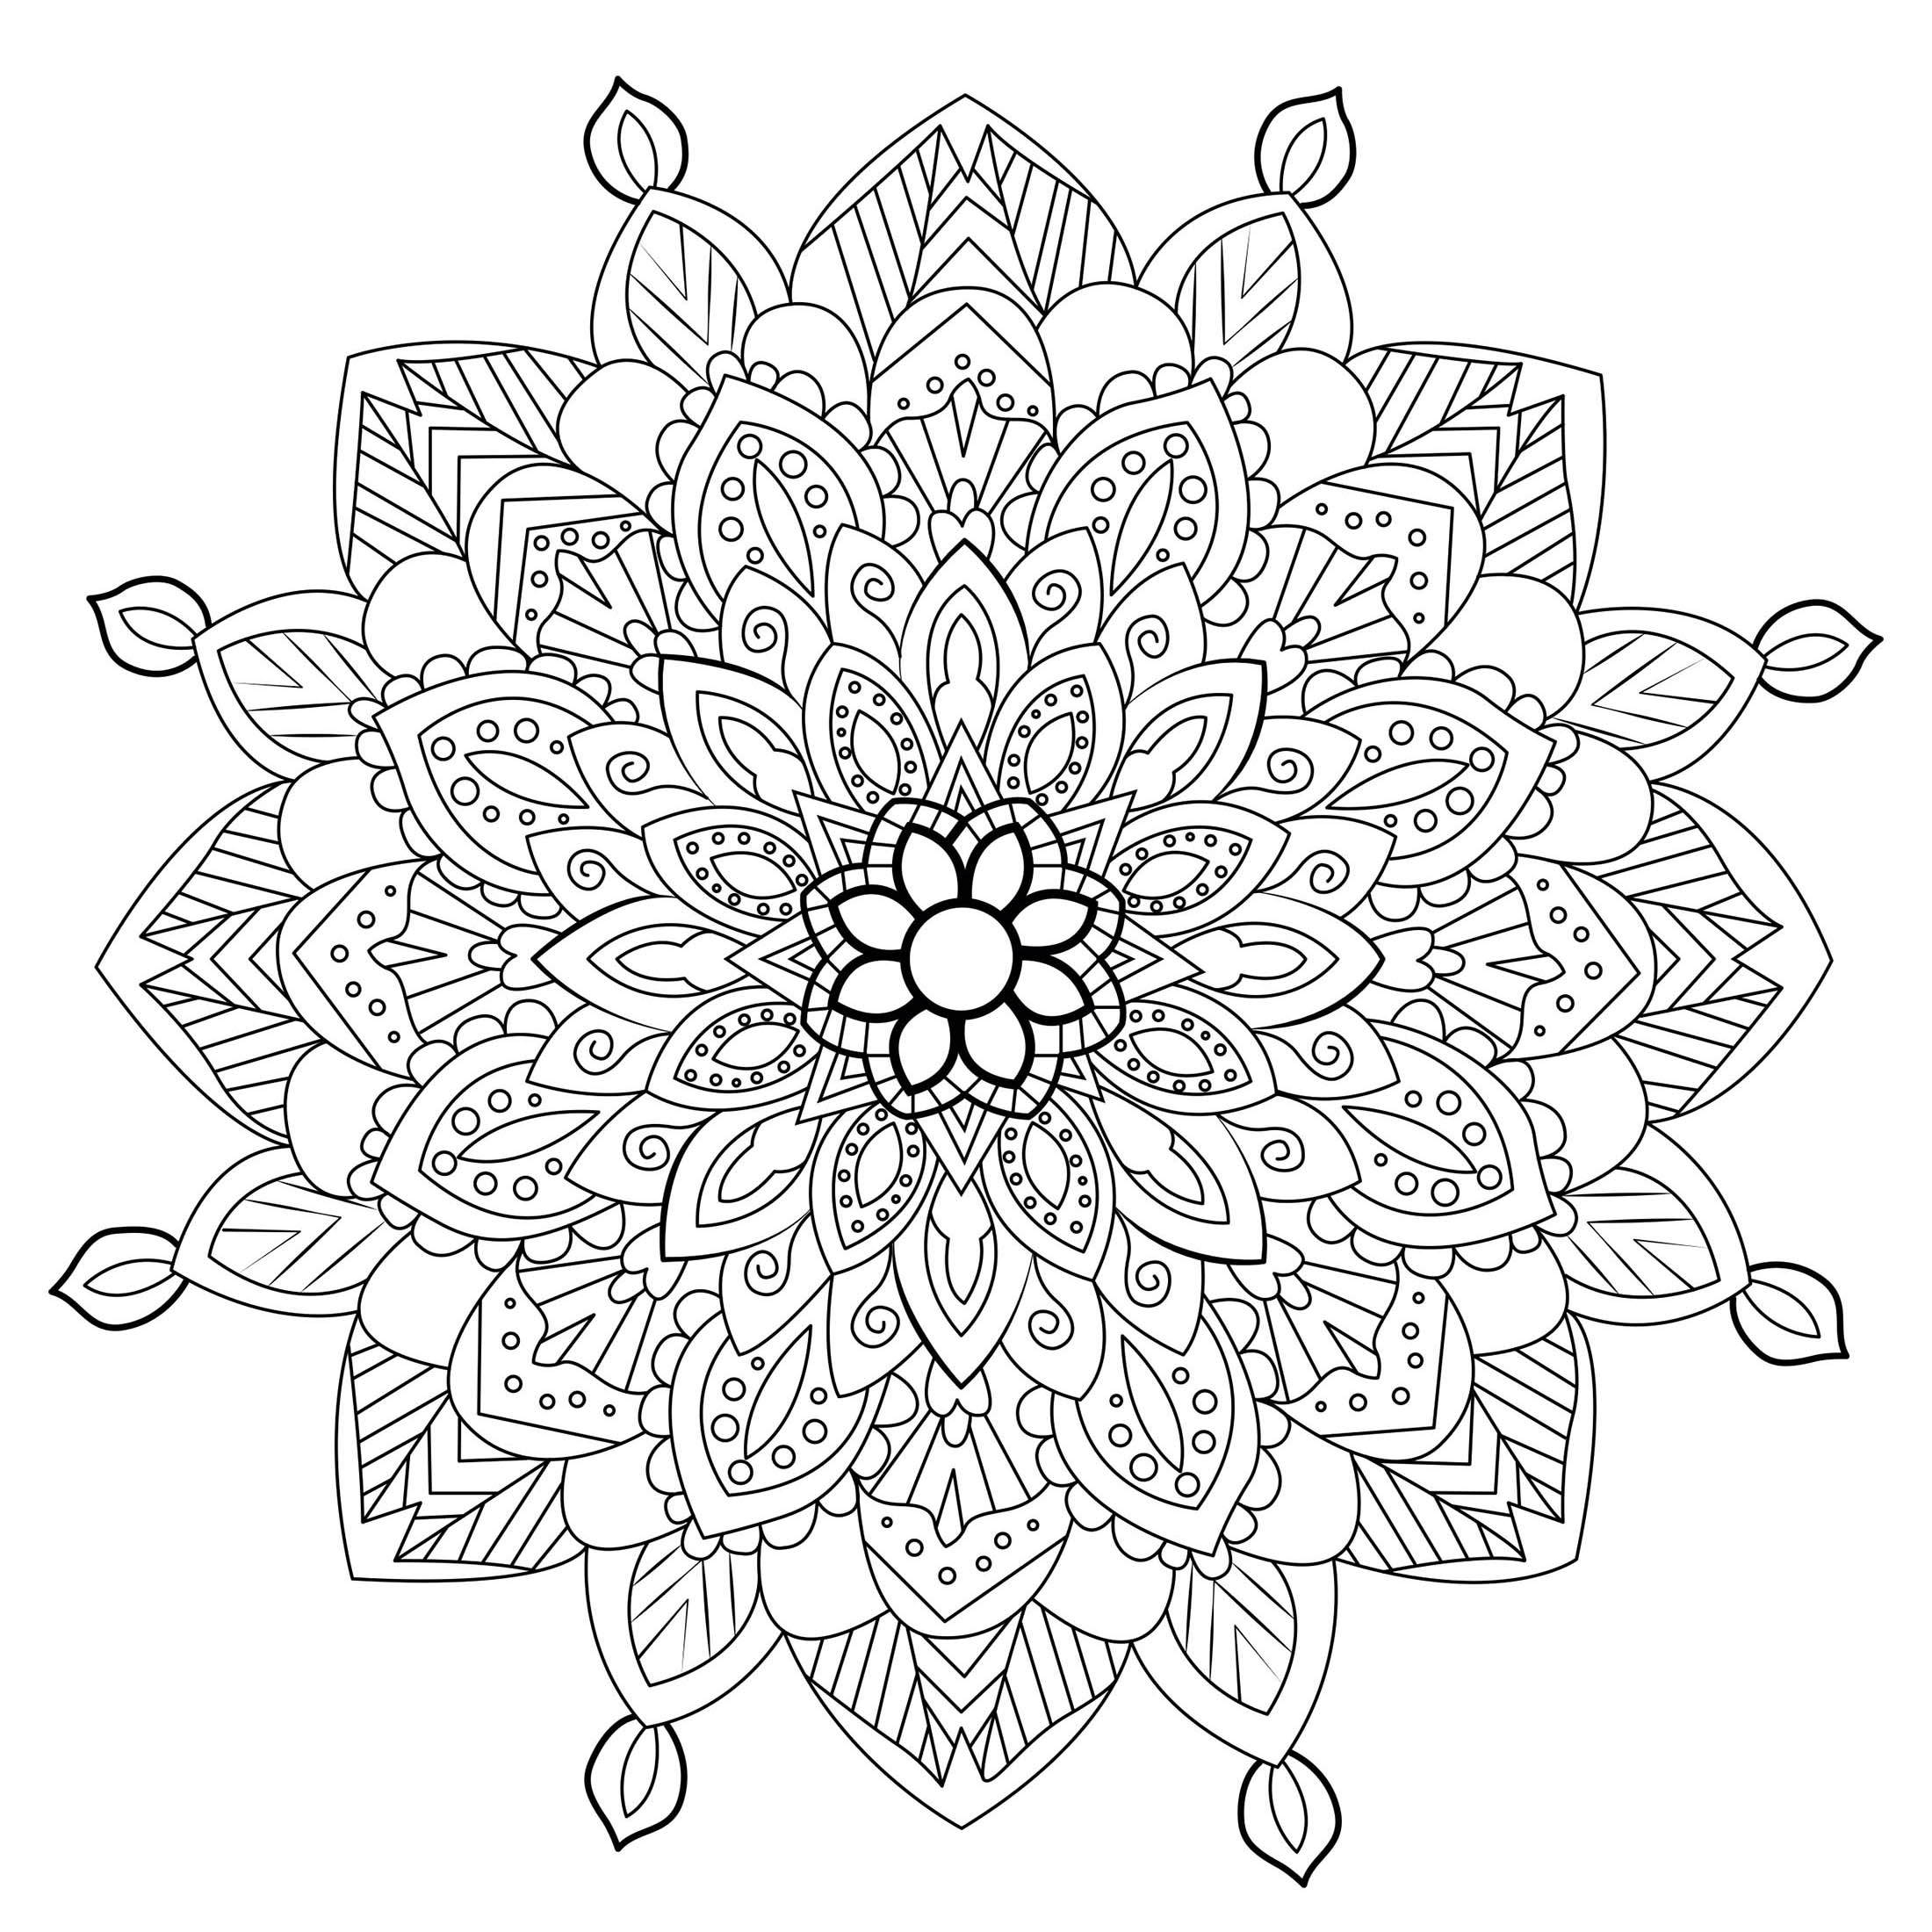 Coloriage Mandala Anti-stress: 100 Mandalas à Colorier pour